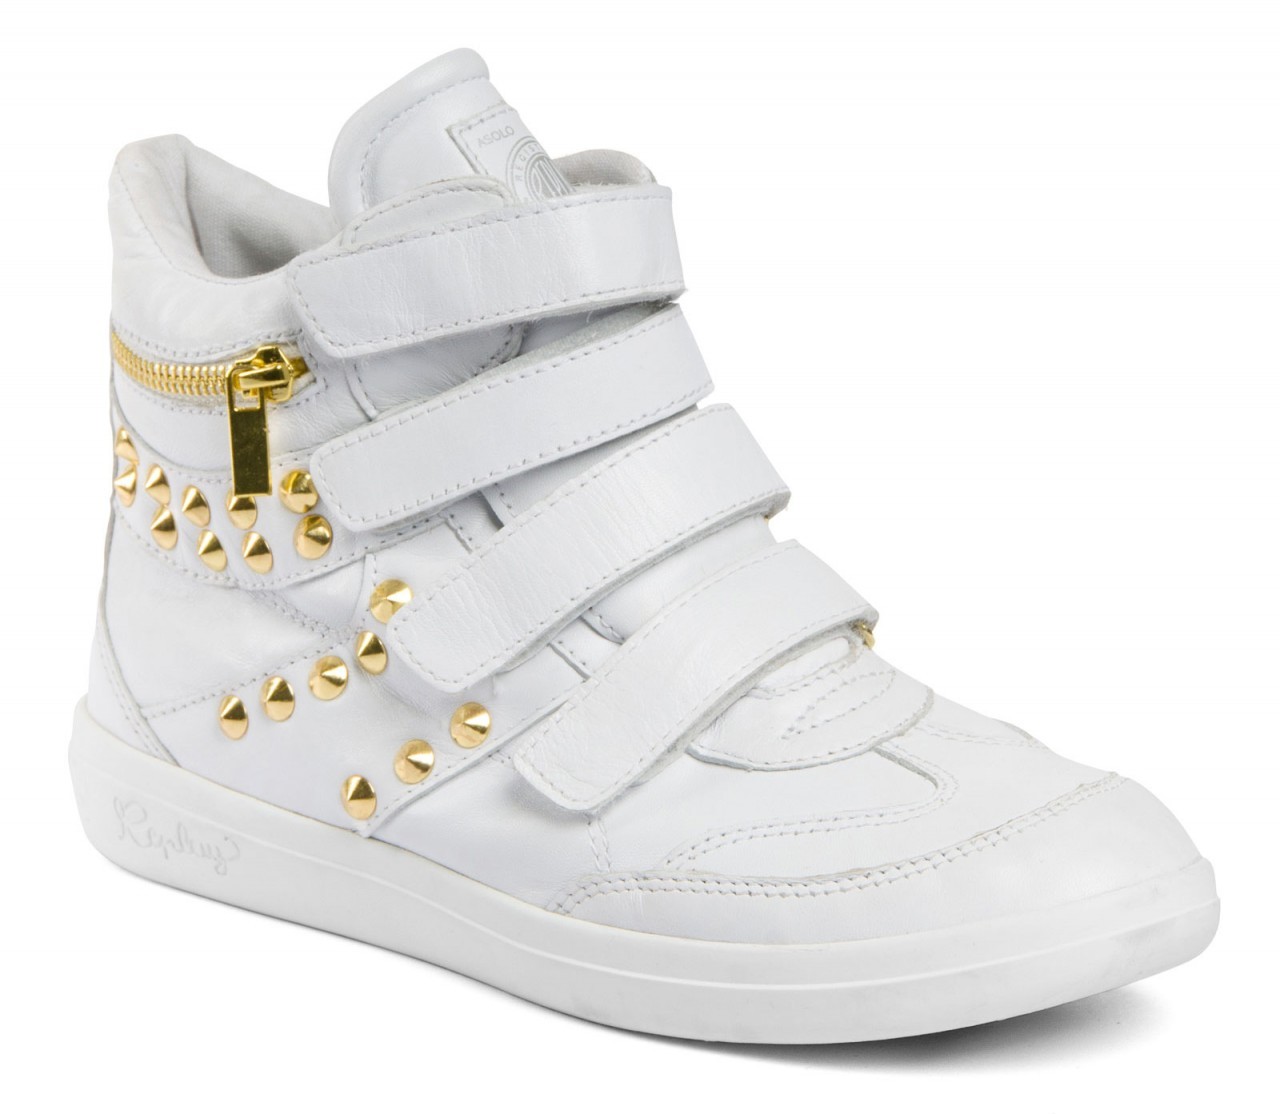 Replay fehér sneaker arany szegecsekkel fotója